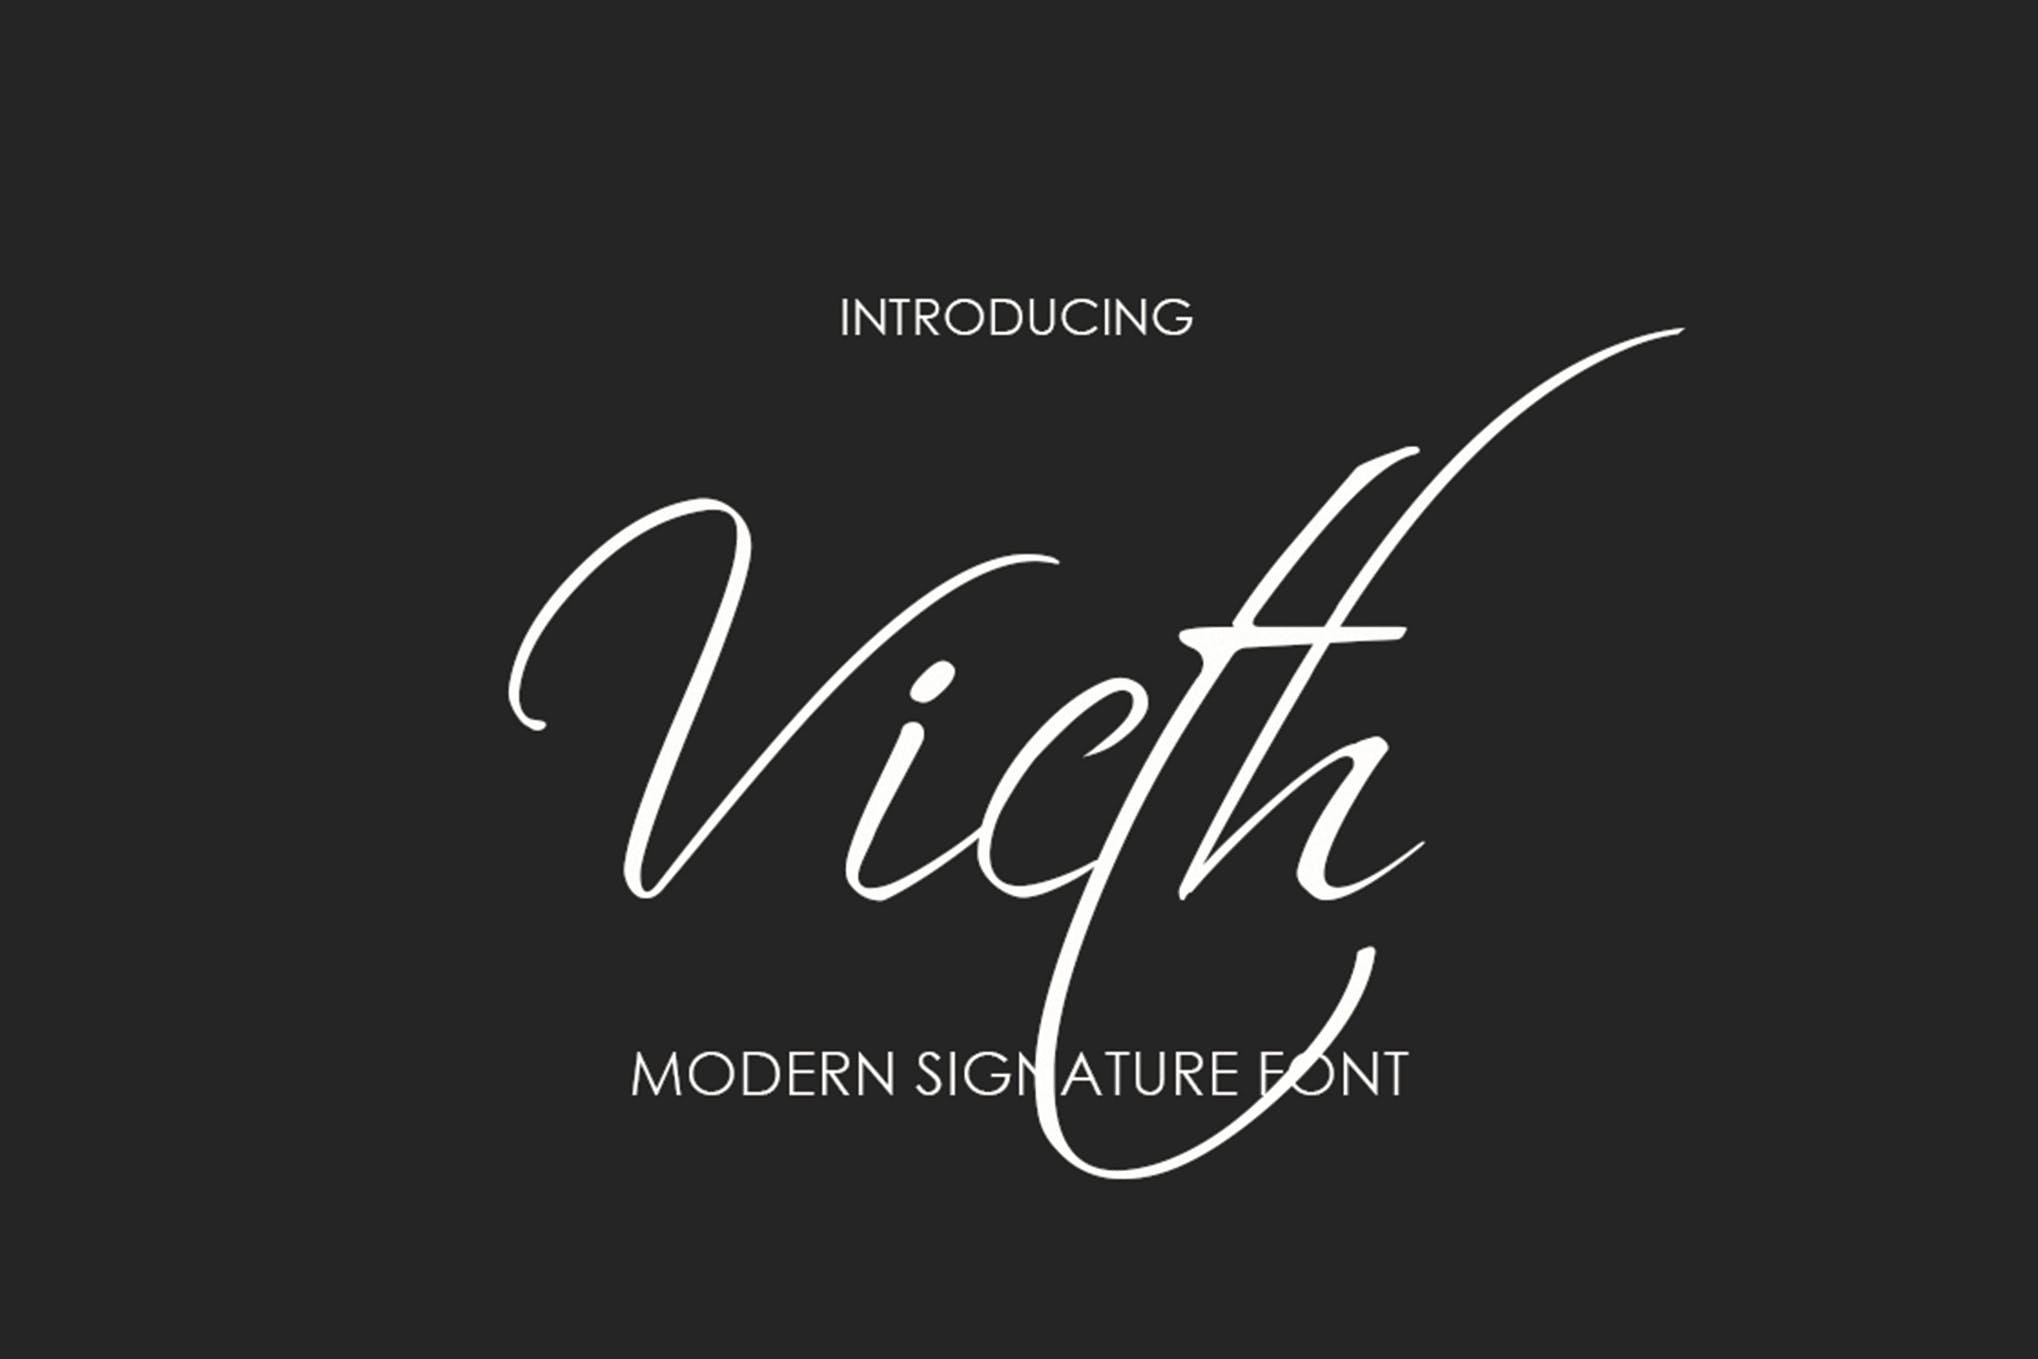 victh时尚个性手写英文字体免费下载